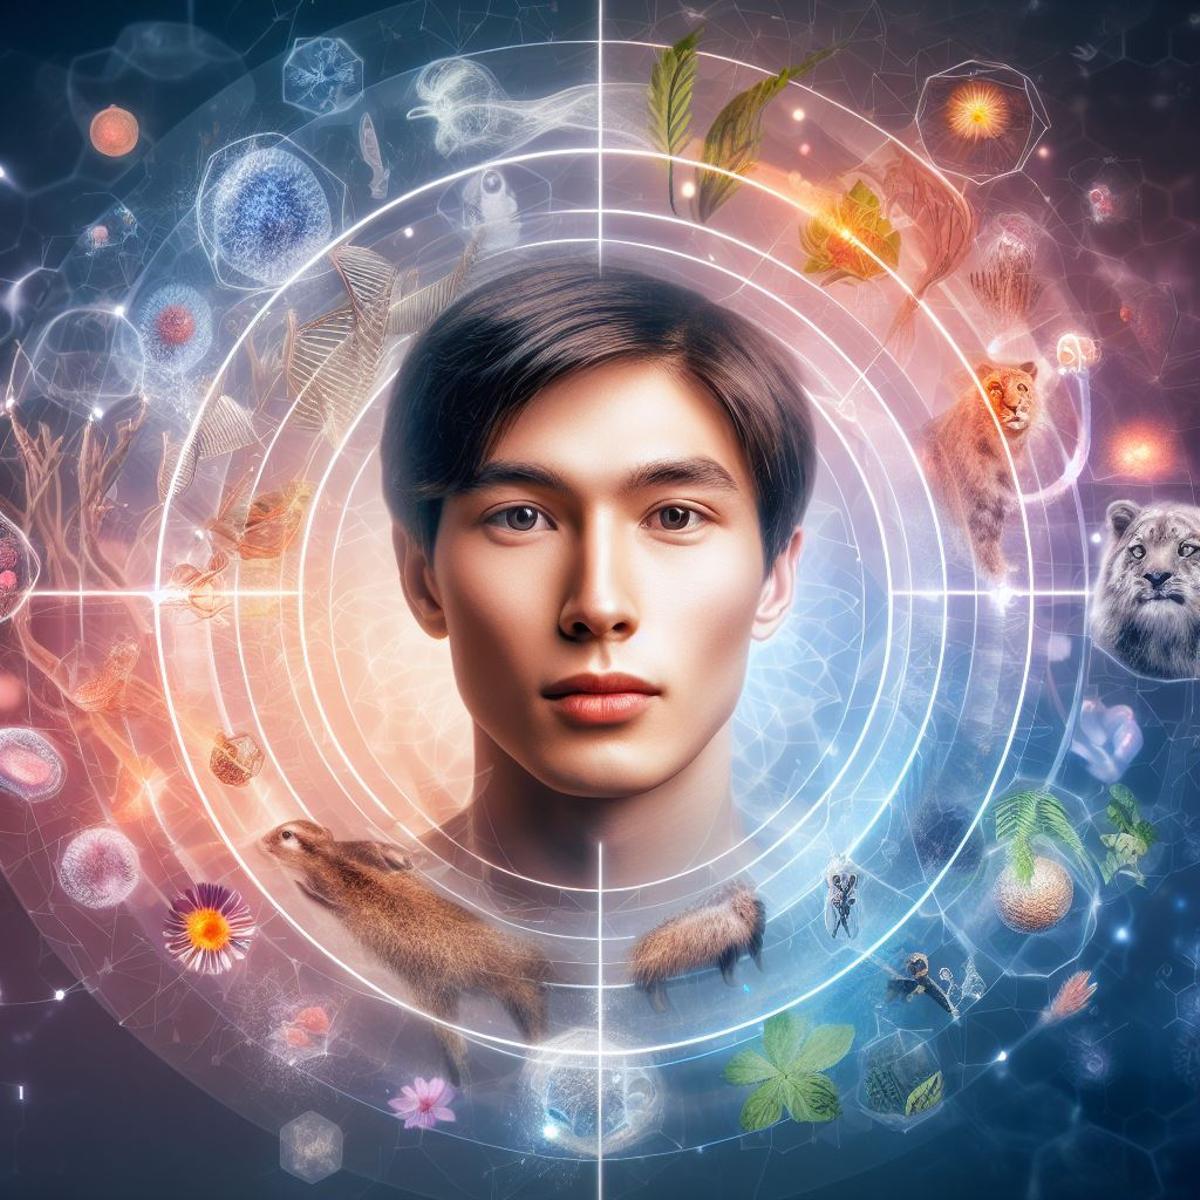 La imagen muestra a una persona de aspecto joven y saludable, rodeada de símbolos de la ciencia y la naturaleza, como ADN, células, plantas y animales.